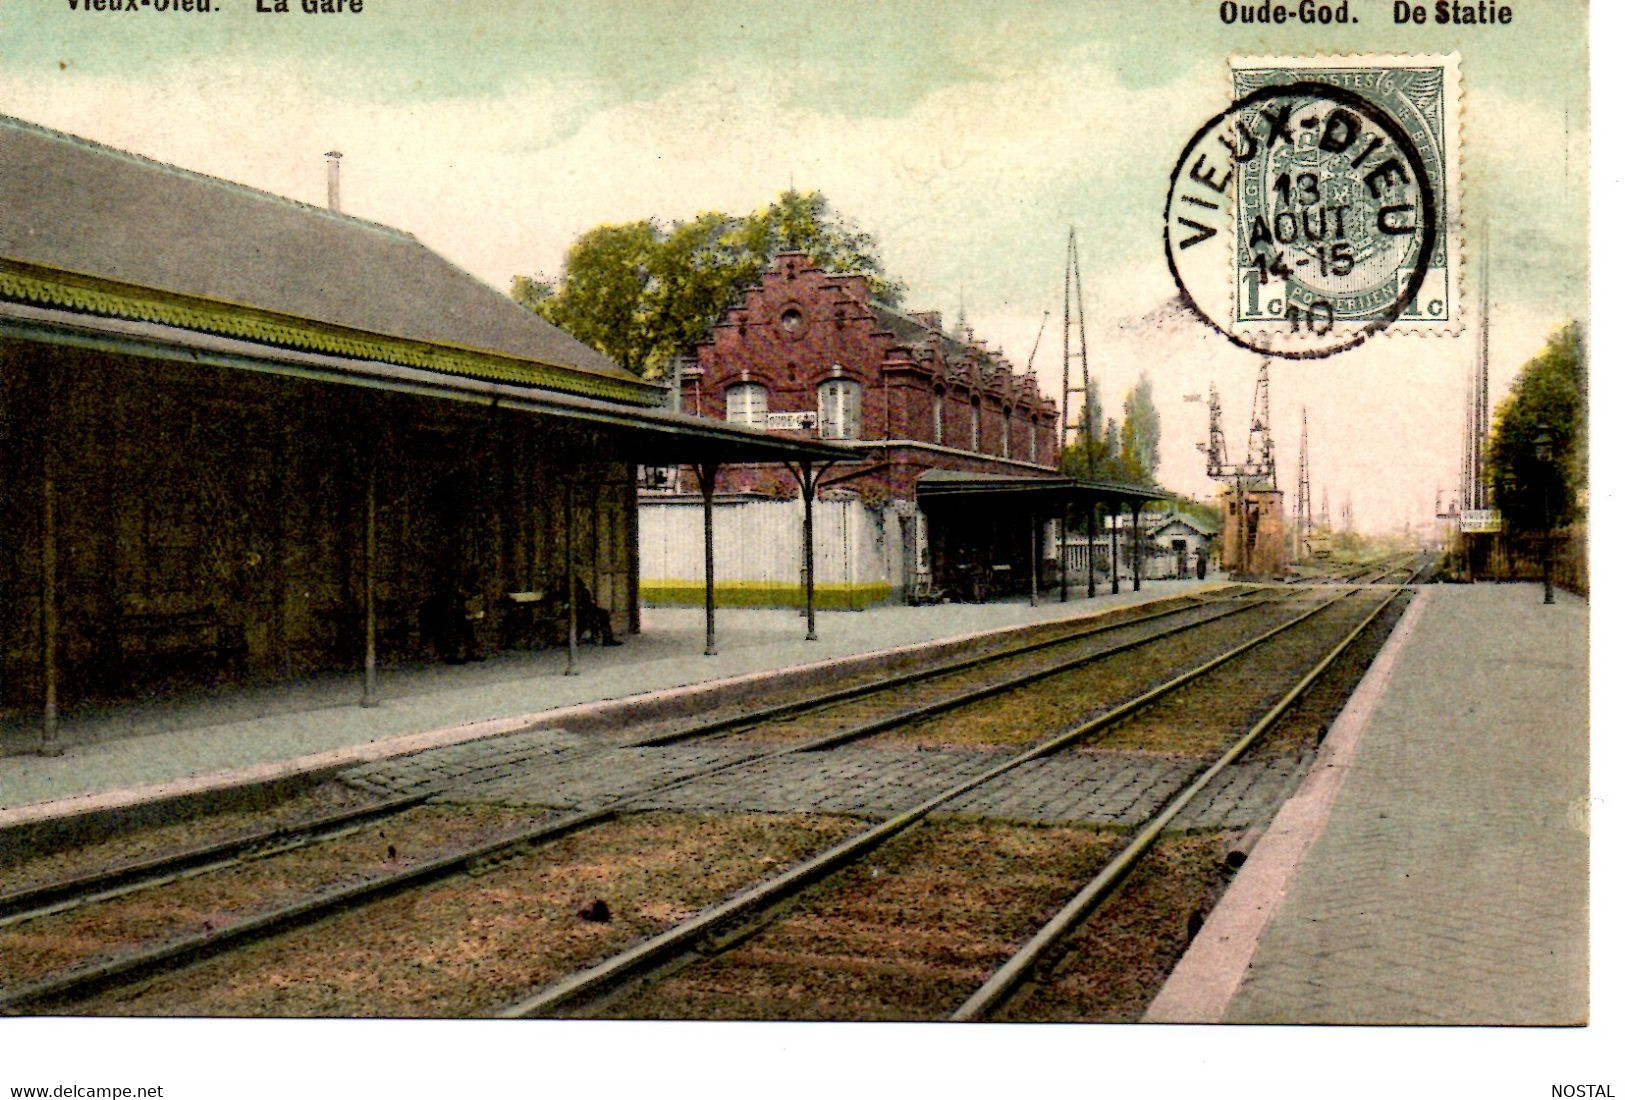 C 1. Vieux-Dieu : La Gare (interieur) - Mortsel